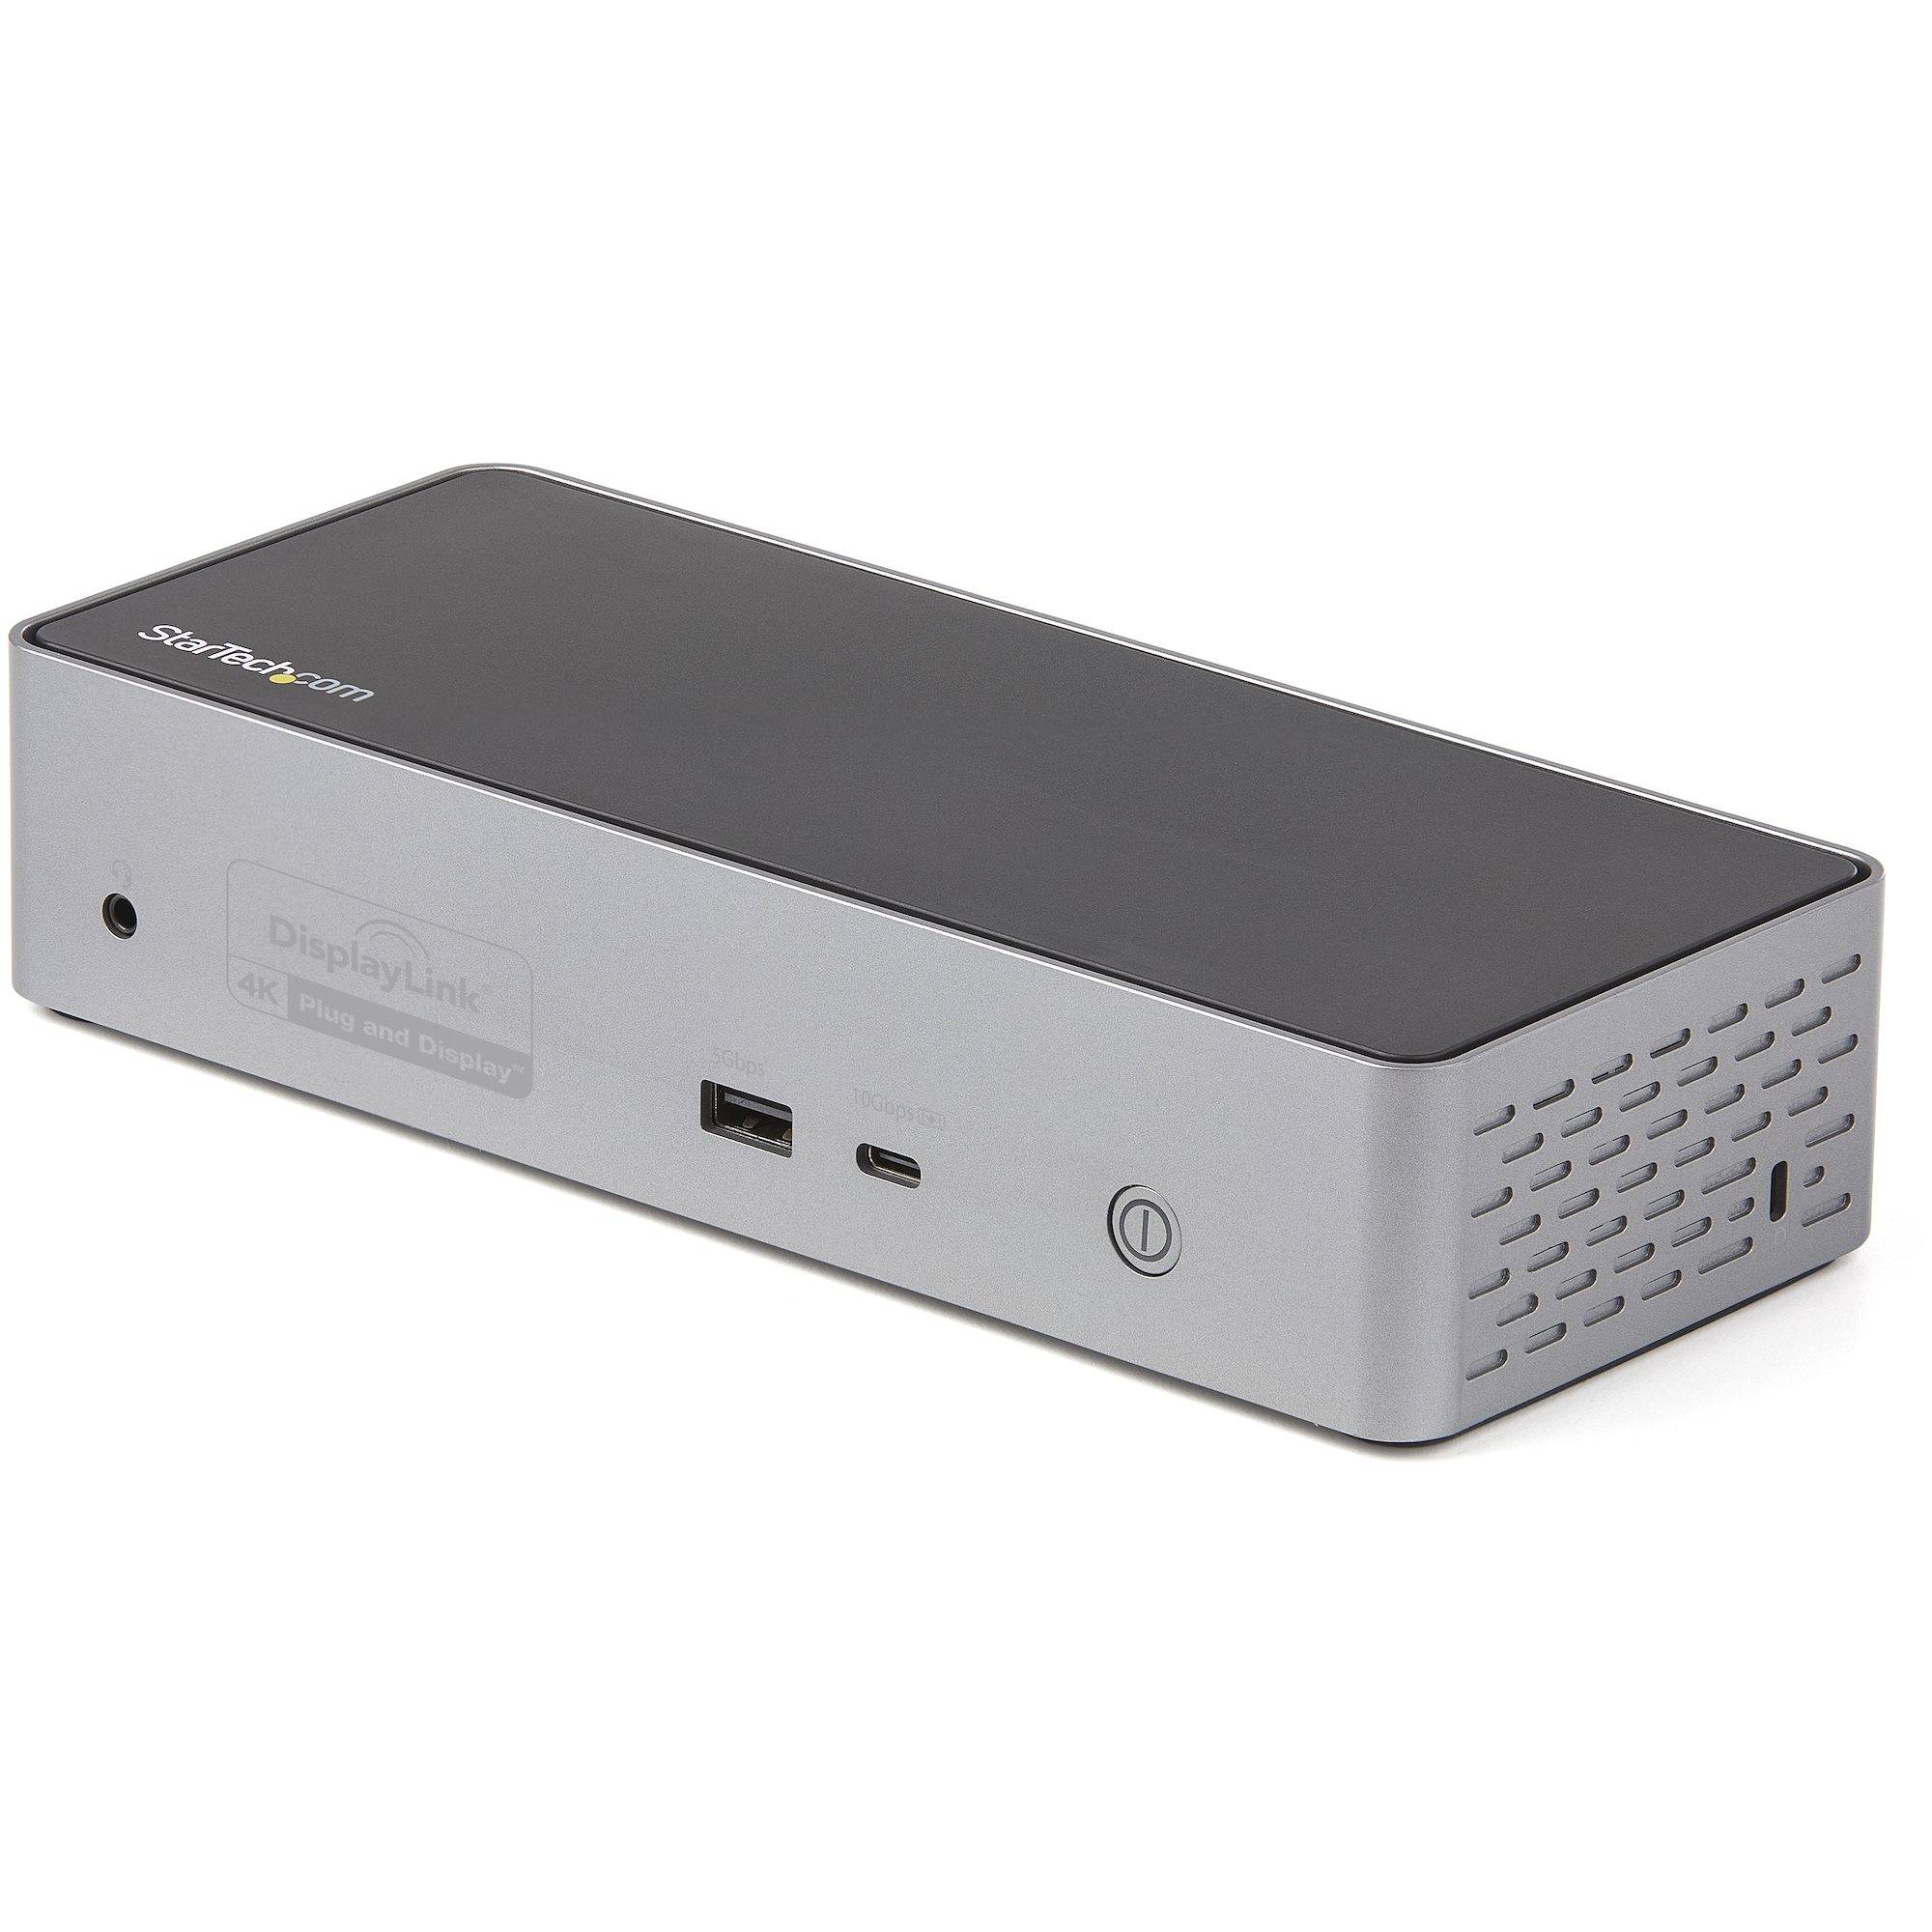 Rca Informatique - Image du produit : UNIVERSAL USB-C DOCK QUAD VIDEO QUAD 4K 60HZ DP OR HDMI 100W PD